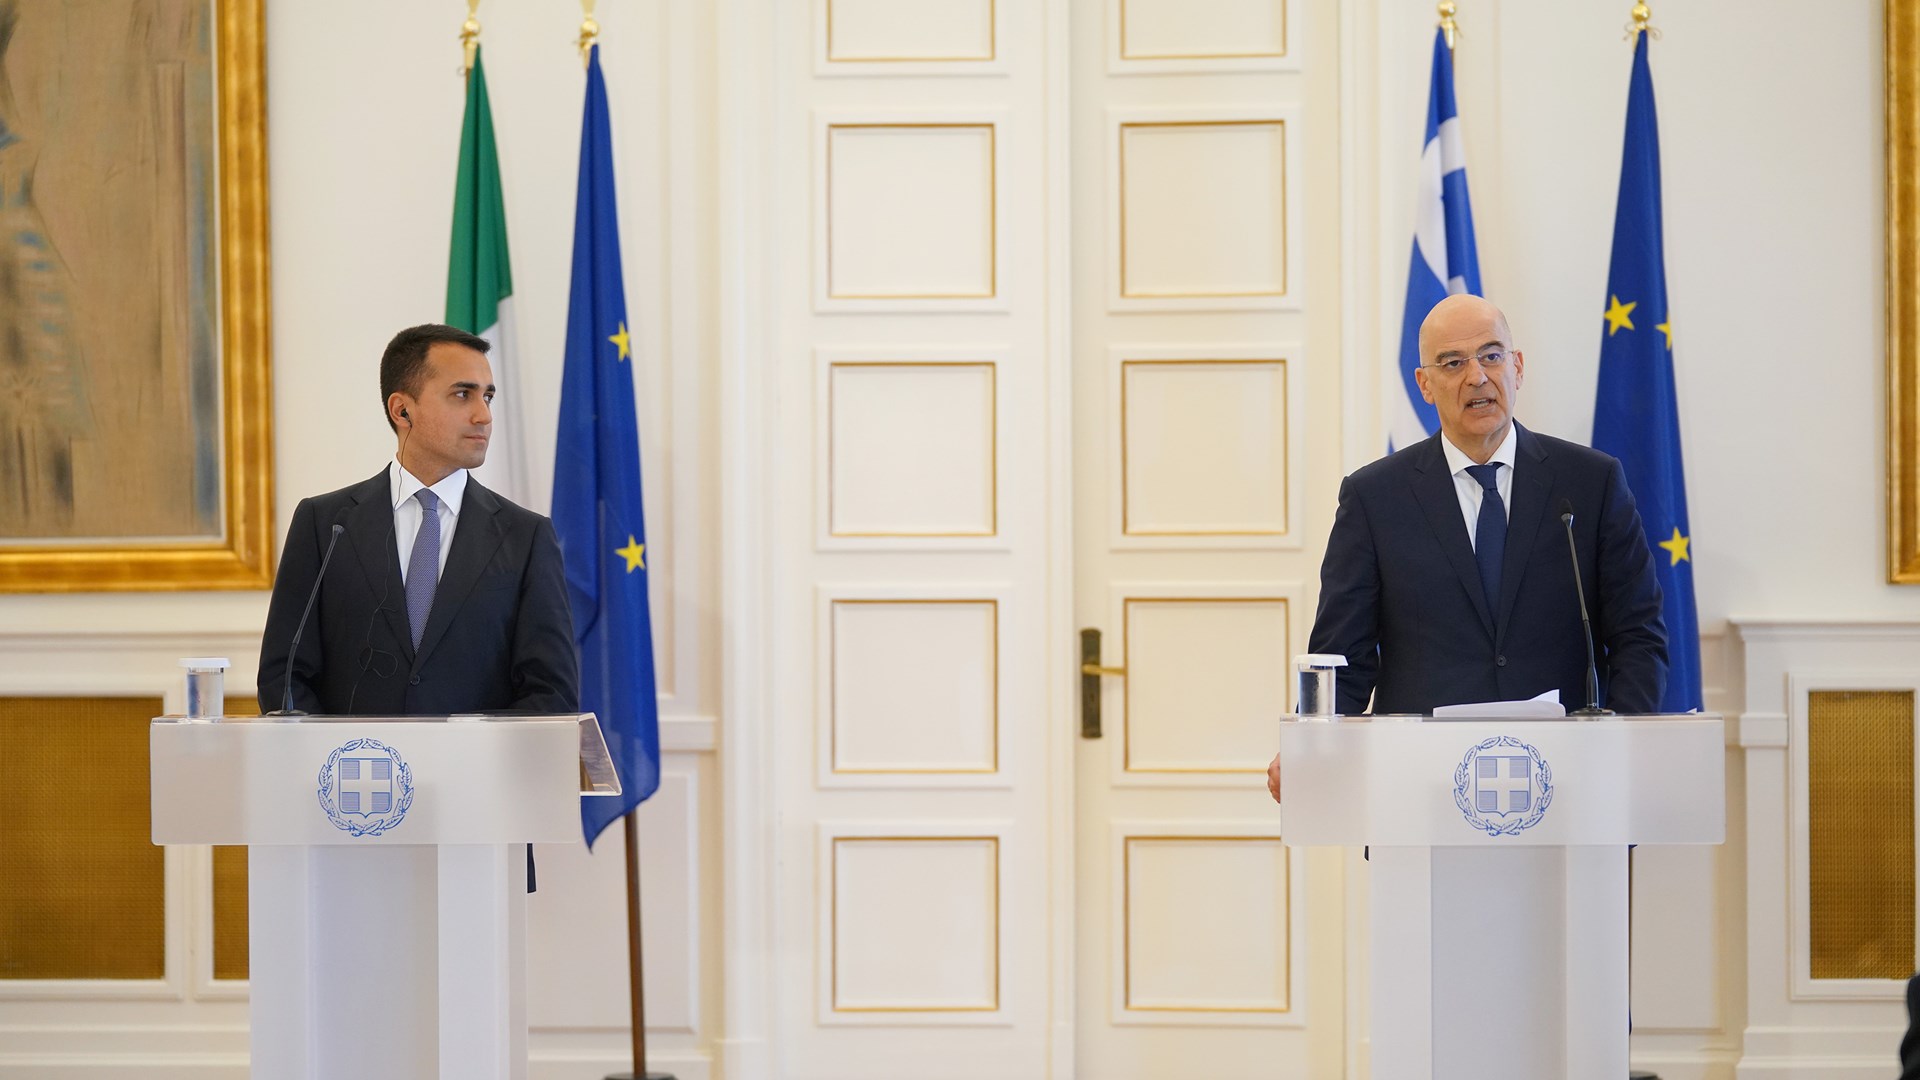 Οριοθέτηση ΑΟΖ: Τι περιλαμβάνει η συμφωνία που υπέγραψαν Ελλάδα και Ιταλία